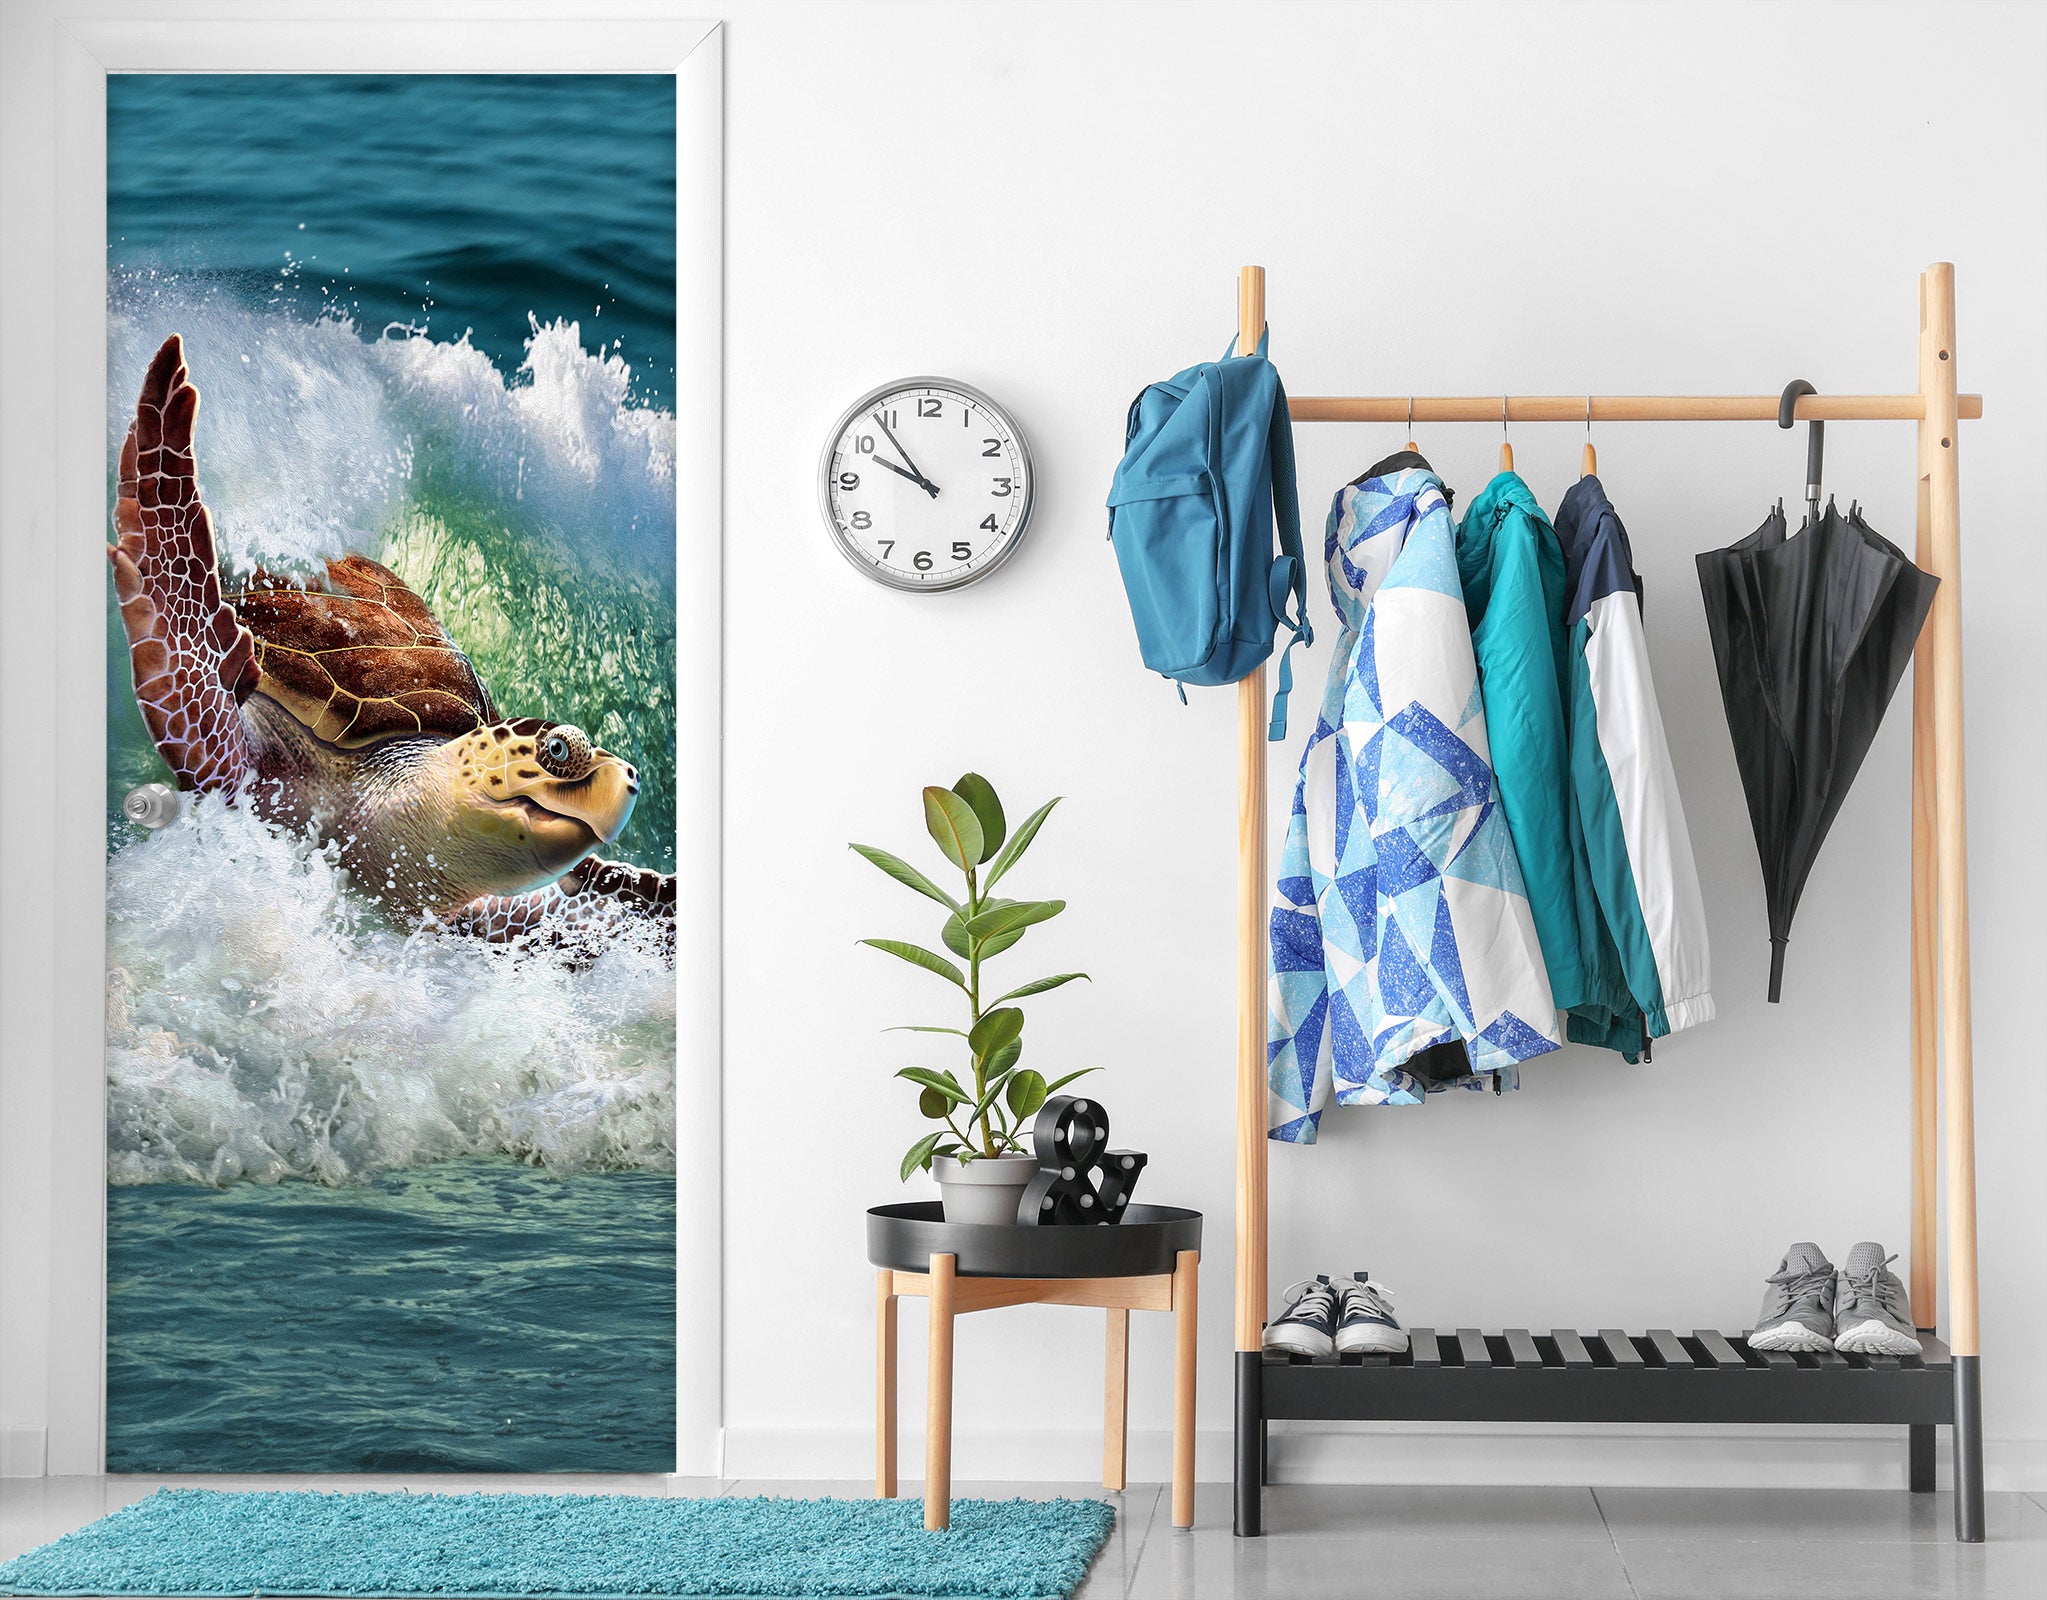 3D Waves Sea Turtle 112148 Jerry LoFaro Door Mural